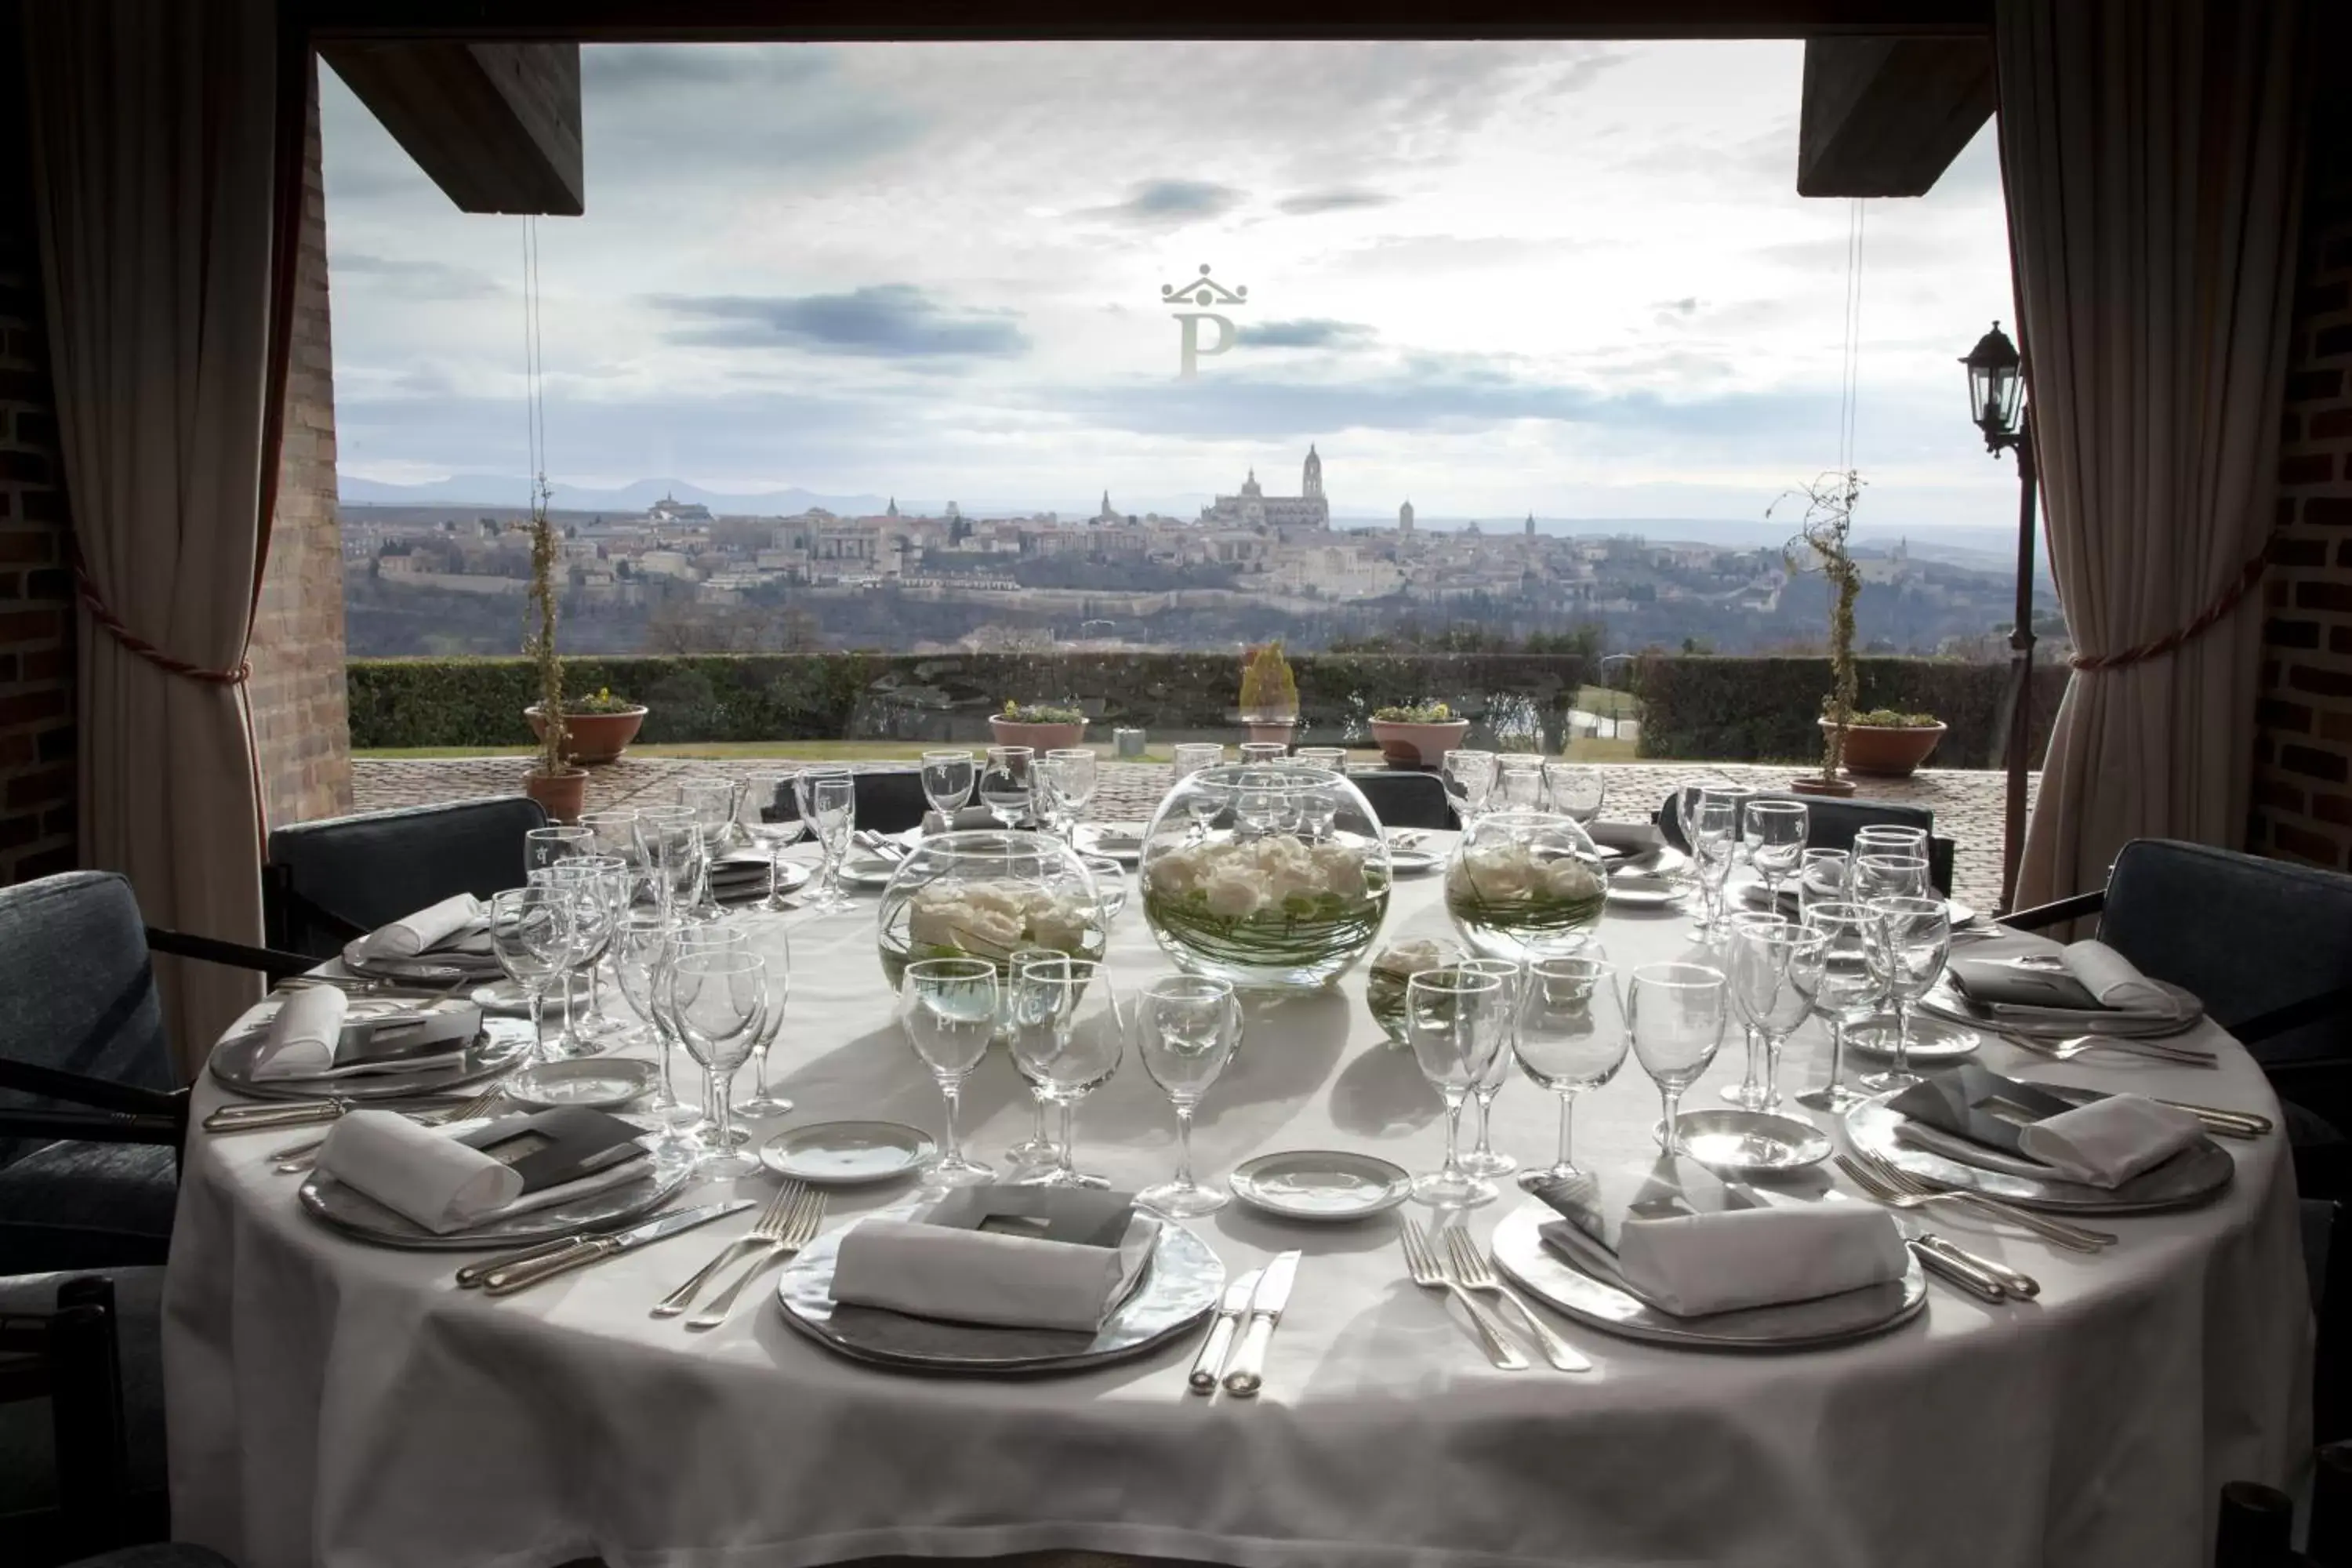 Banquet/Function facilities, Restaurant/Places to Eat in Parador de Segovia